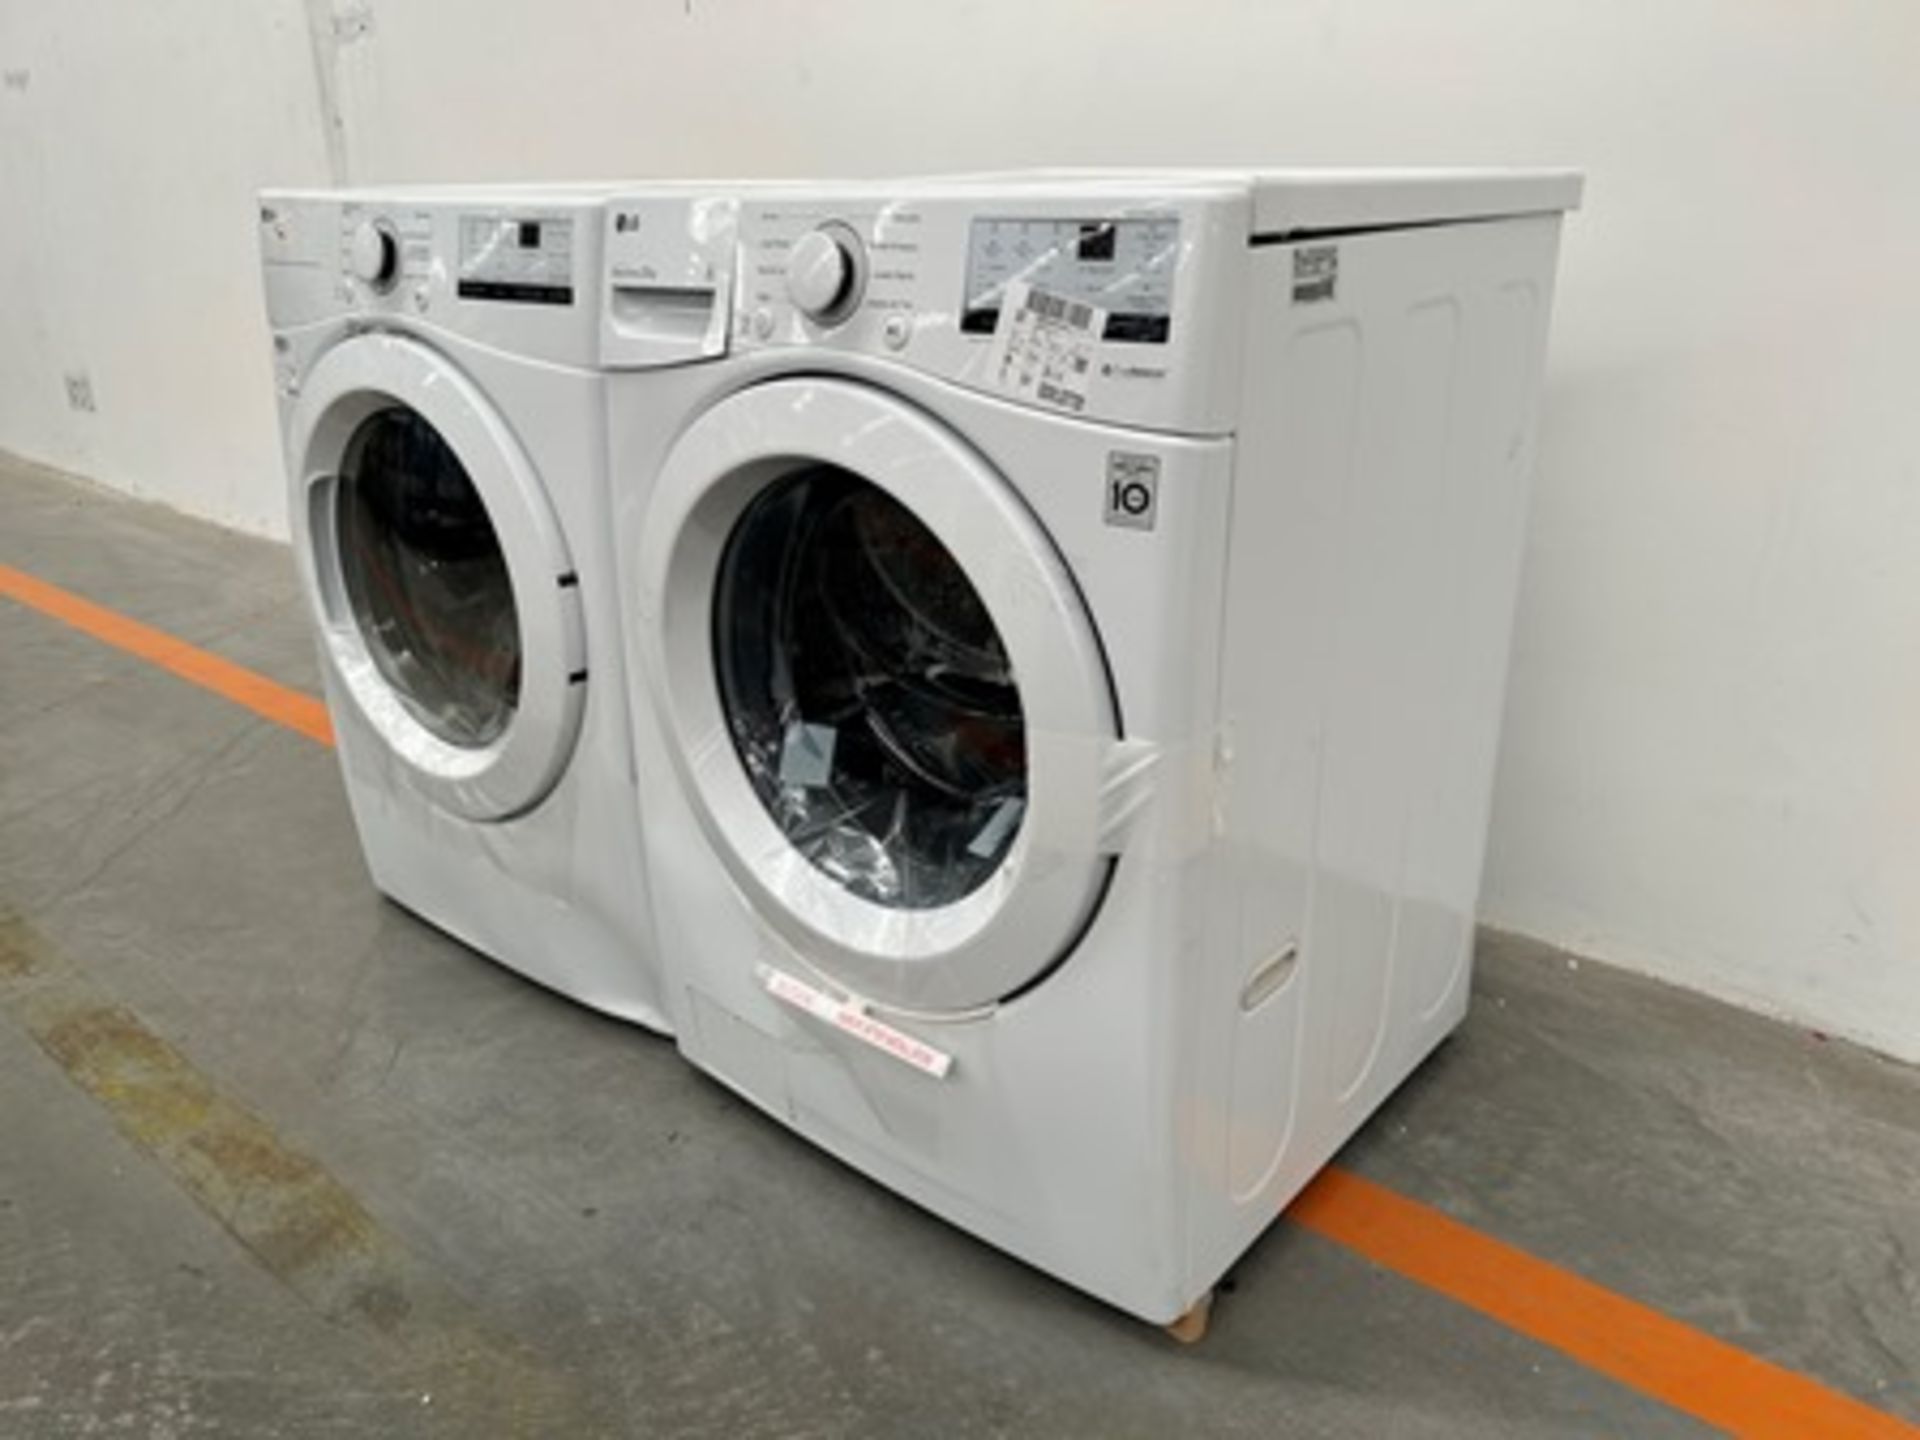 Combo lavadora y Secadora contiene: 1 Lavadora de 20 KG Marca LG, Modelo WM202V26W, Serie 0X531, Co - Image 2 of 8